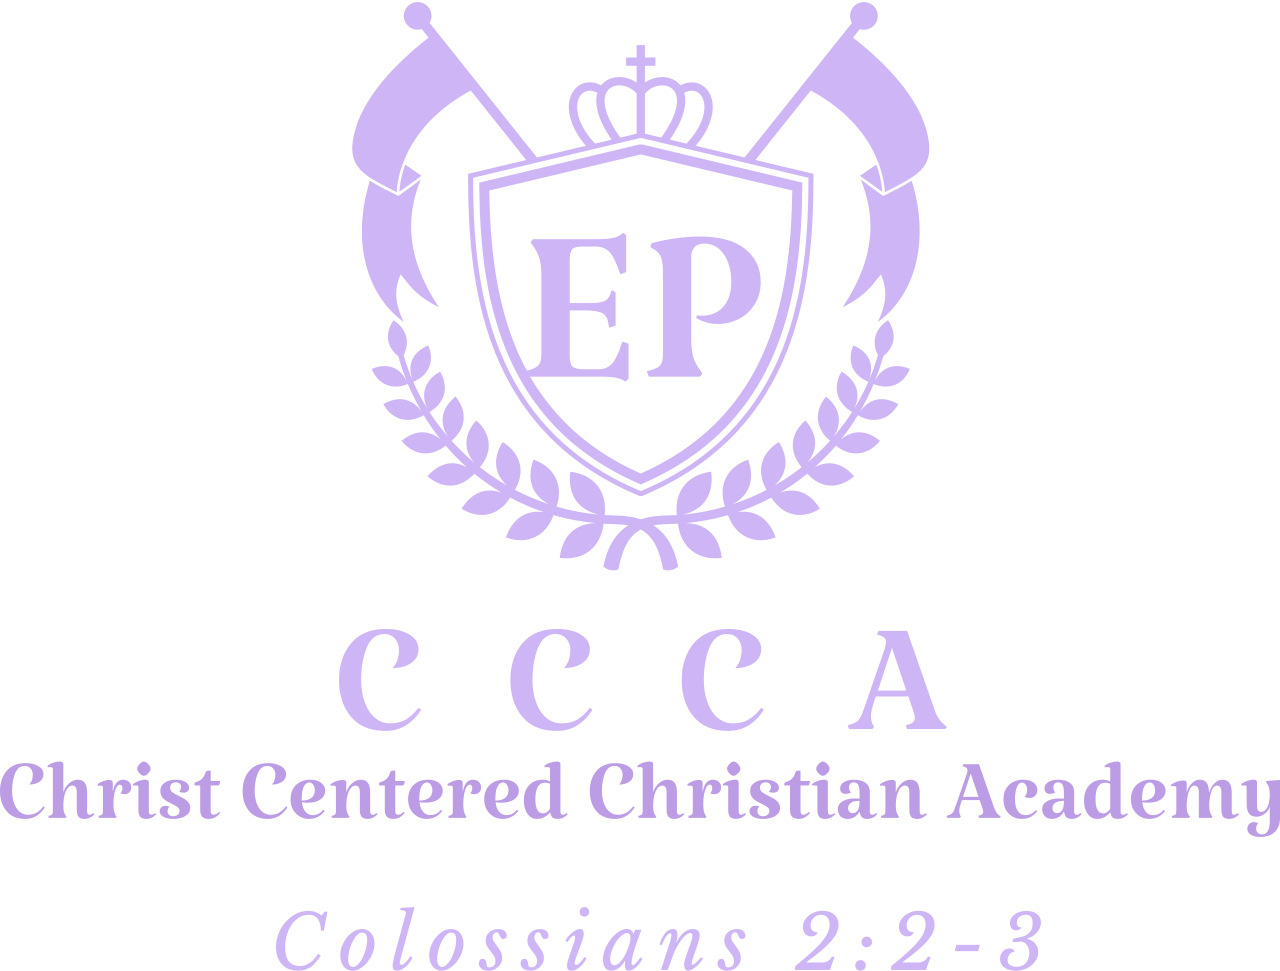 CCCA's logo